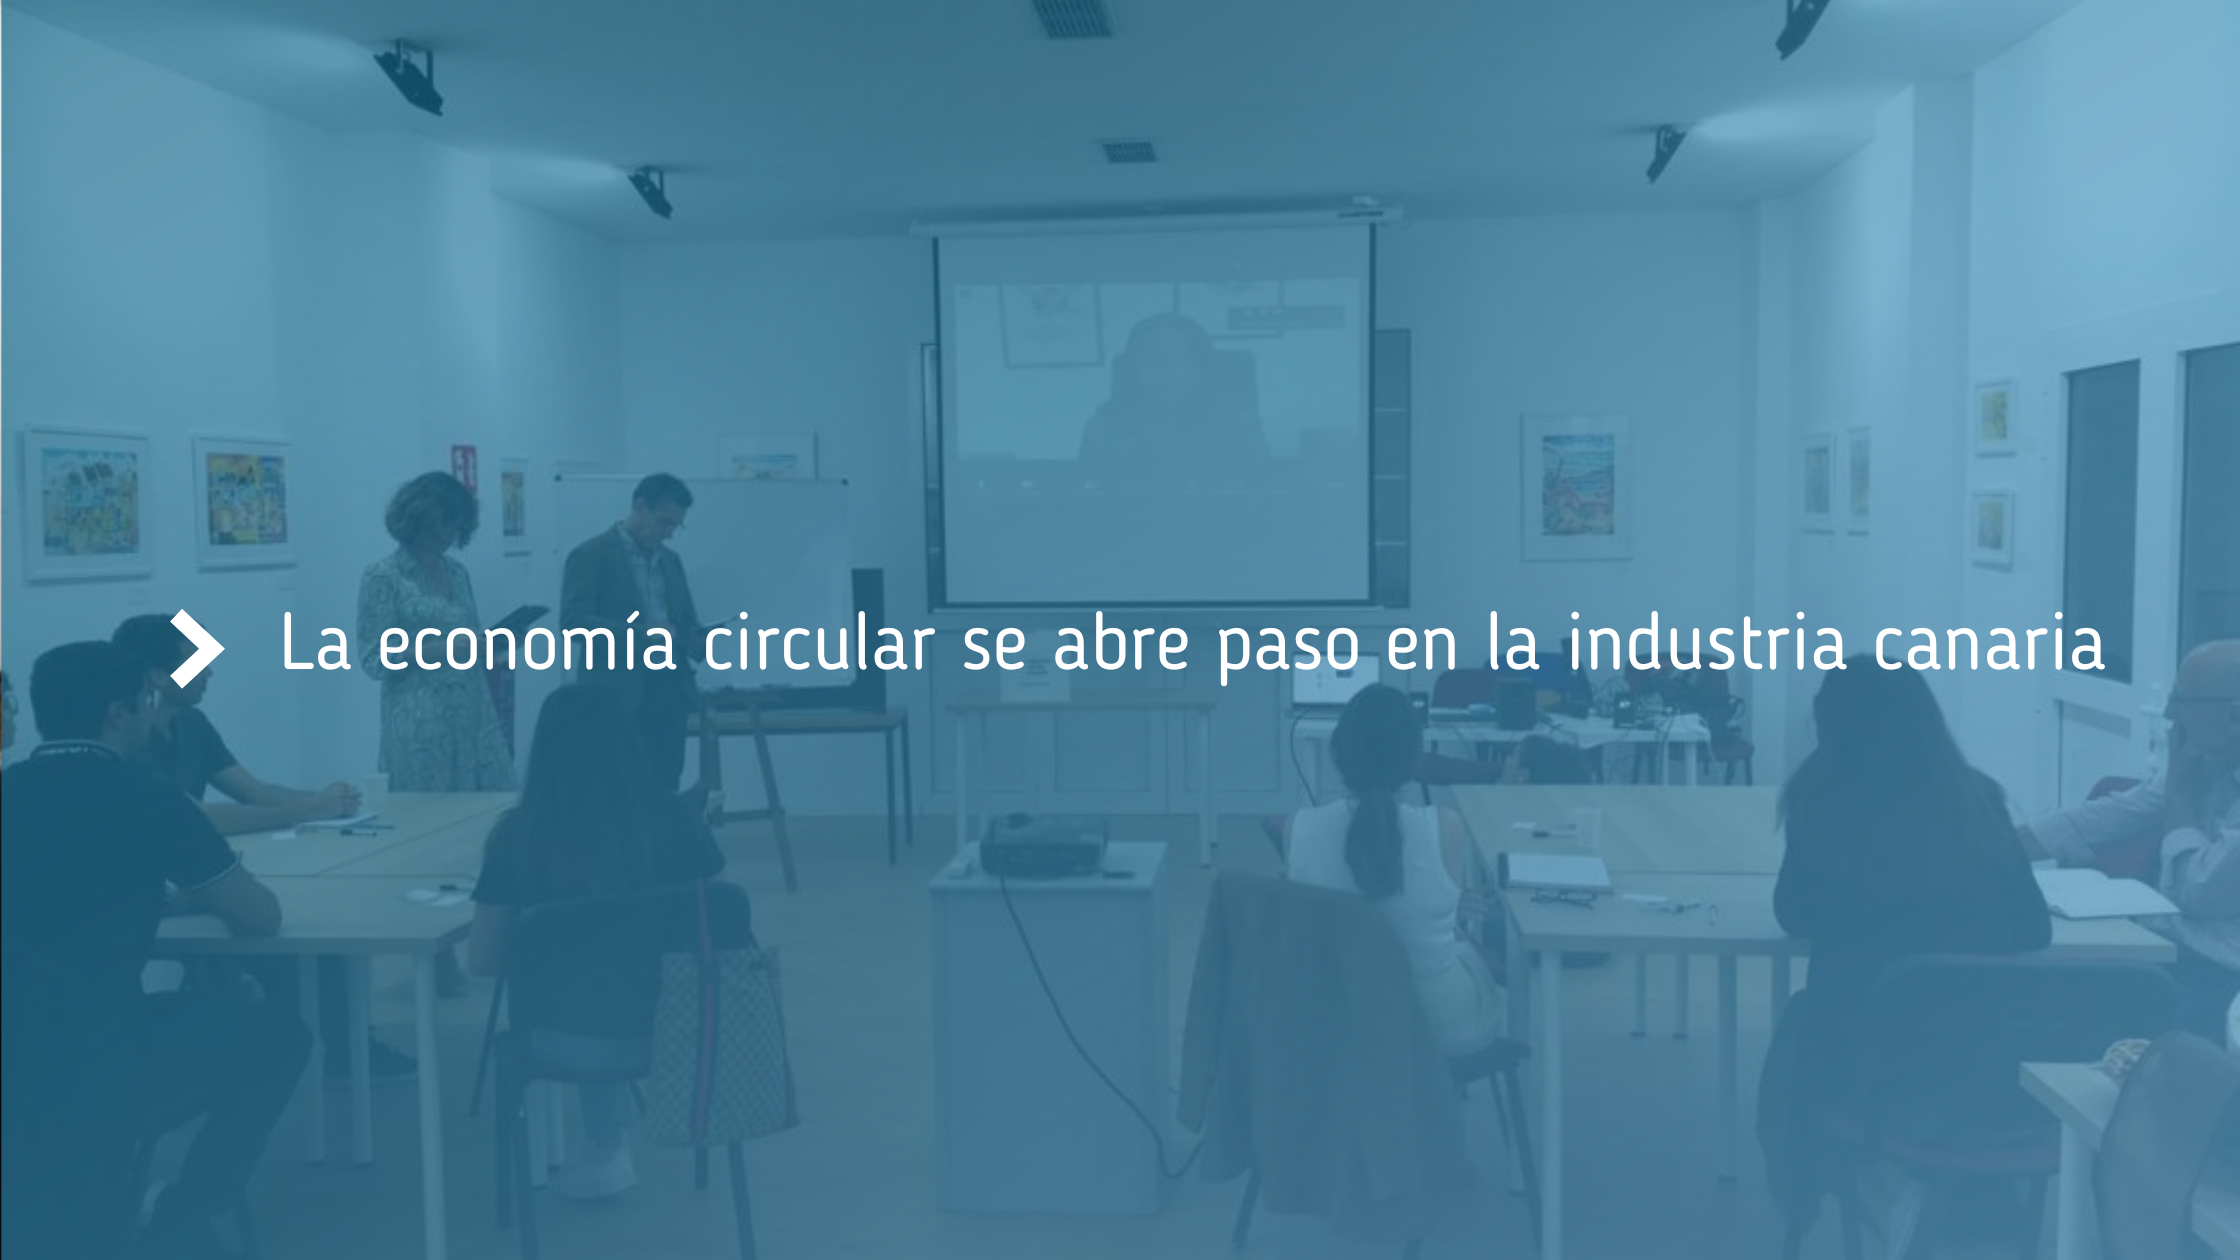 Las_pymes_industriales_canarias_se_adentran_en_la_economía_circular